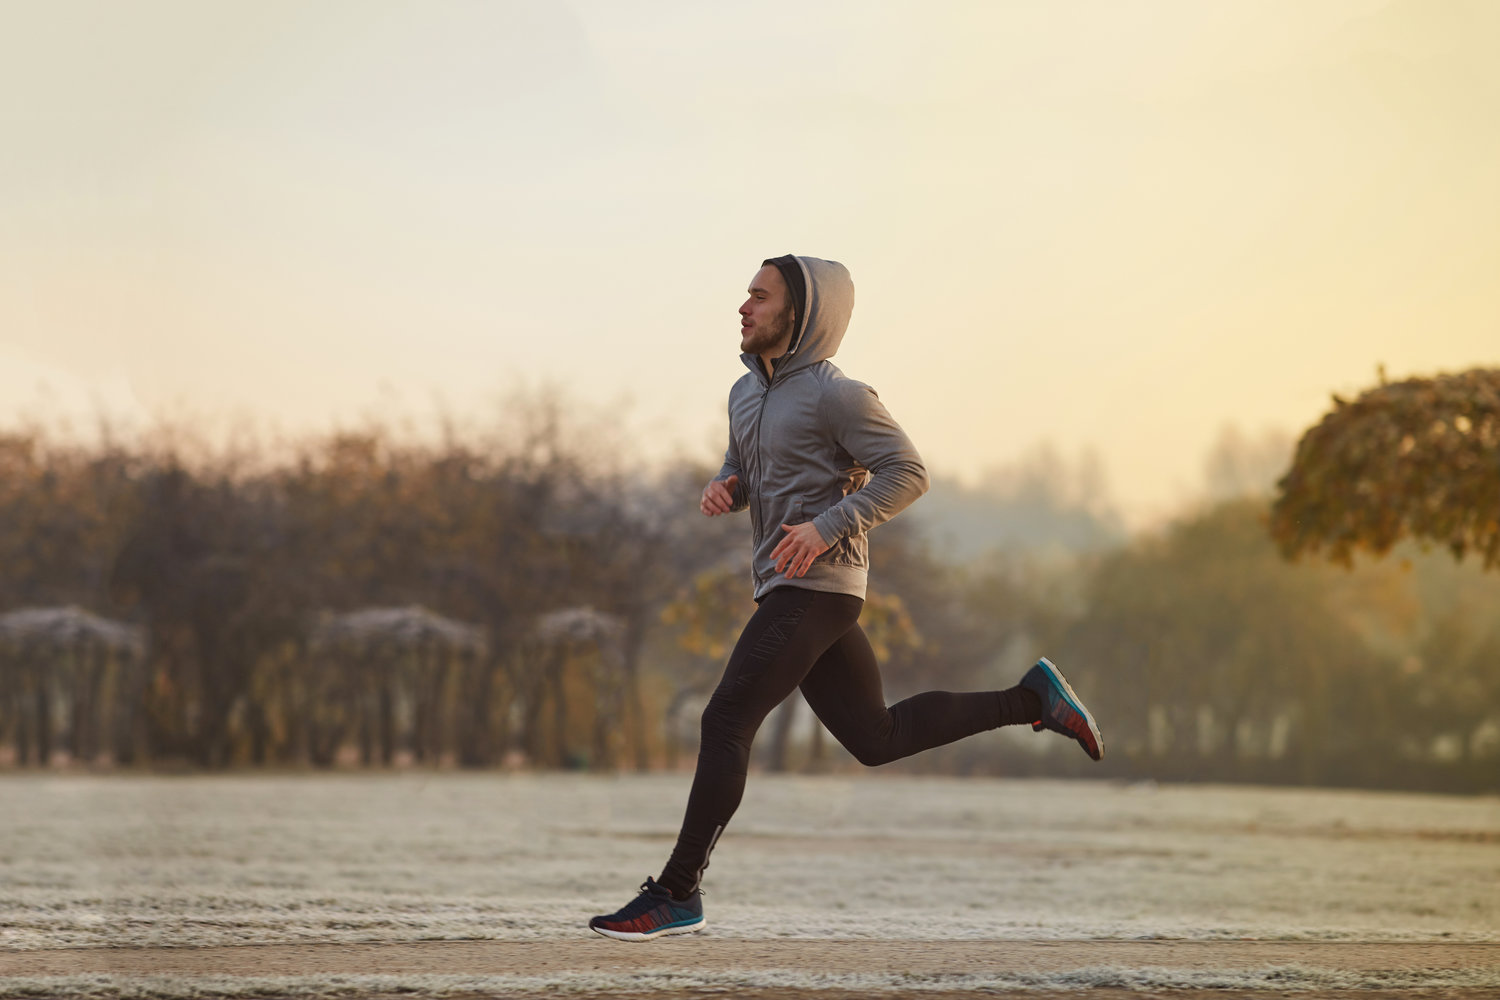 Ranojutarnje trčanje tokom zimskih mjeseci ima brojne benefite